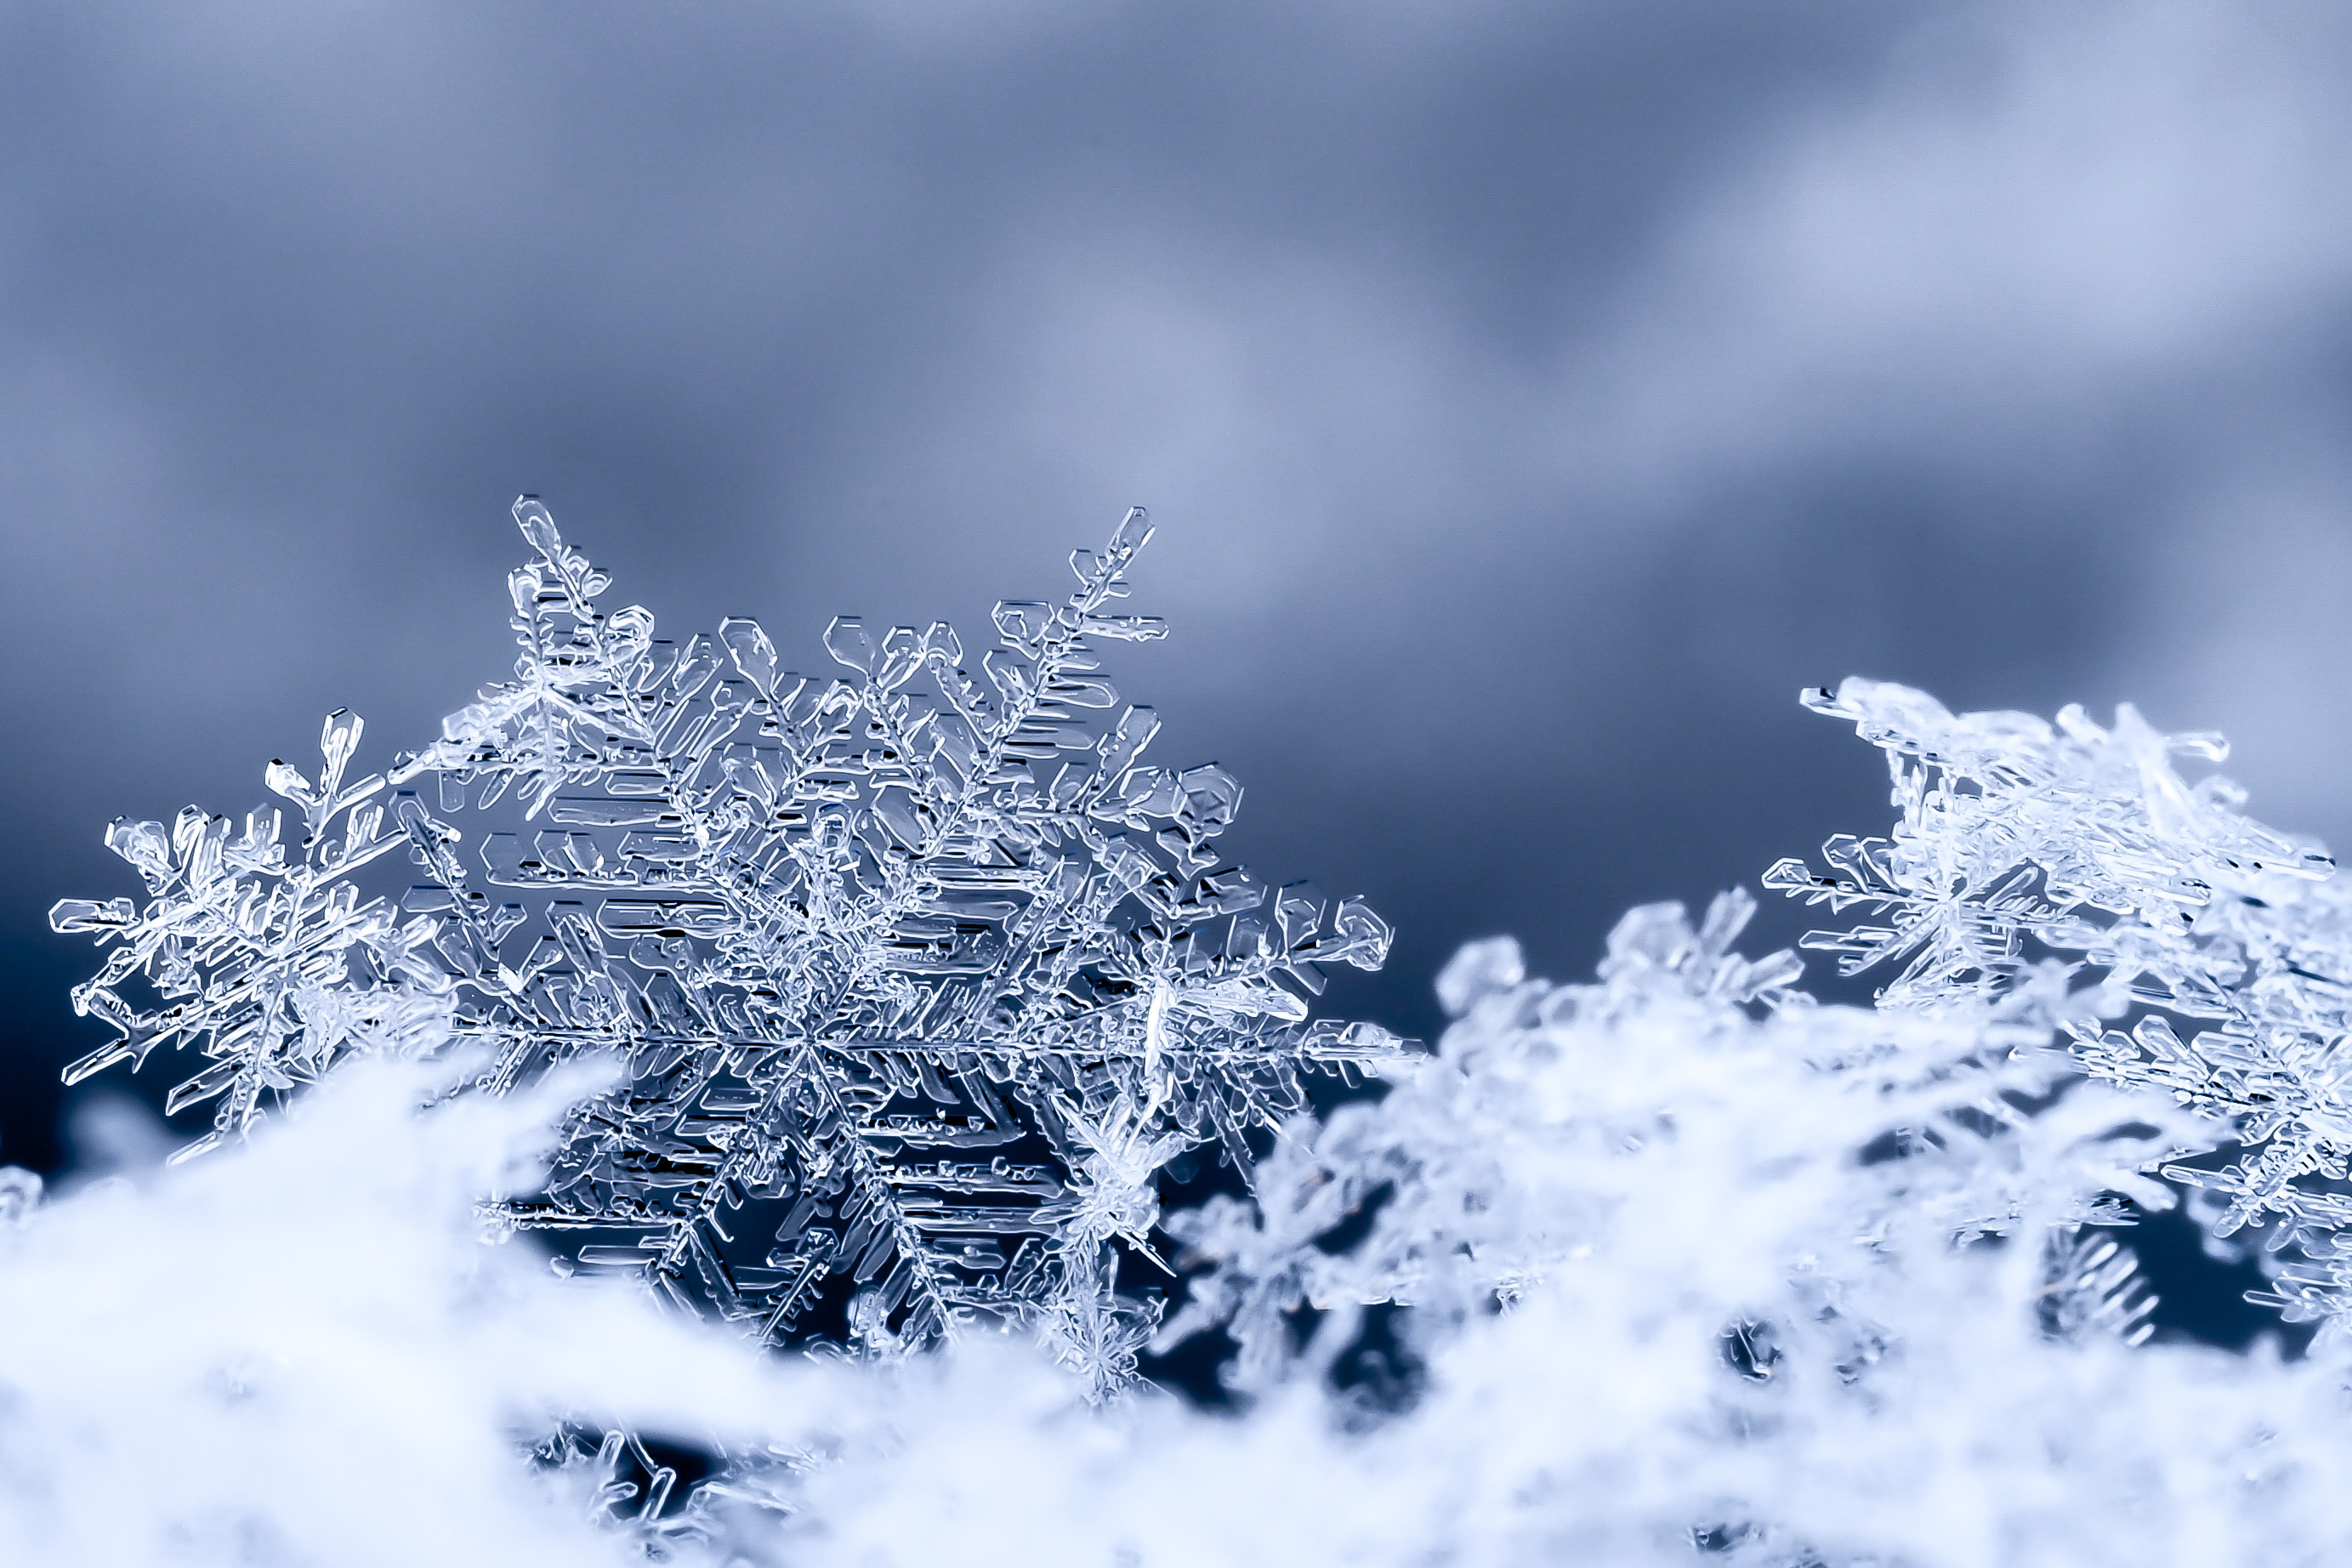 Nếu bạn đang tìm kiếm hình nền lý tưởng cho chiếc máy tính của mình trong mùa đông này, thì hình nền tuyết trắng là đáp án. Chiêm ngưỡng khung cảnh tuyết phủ đầy mạnh mẽ và uy nghi, và cảm nhận sự thanh tịnh của không khí mùa đông.